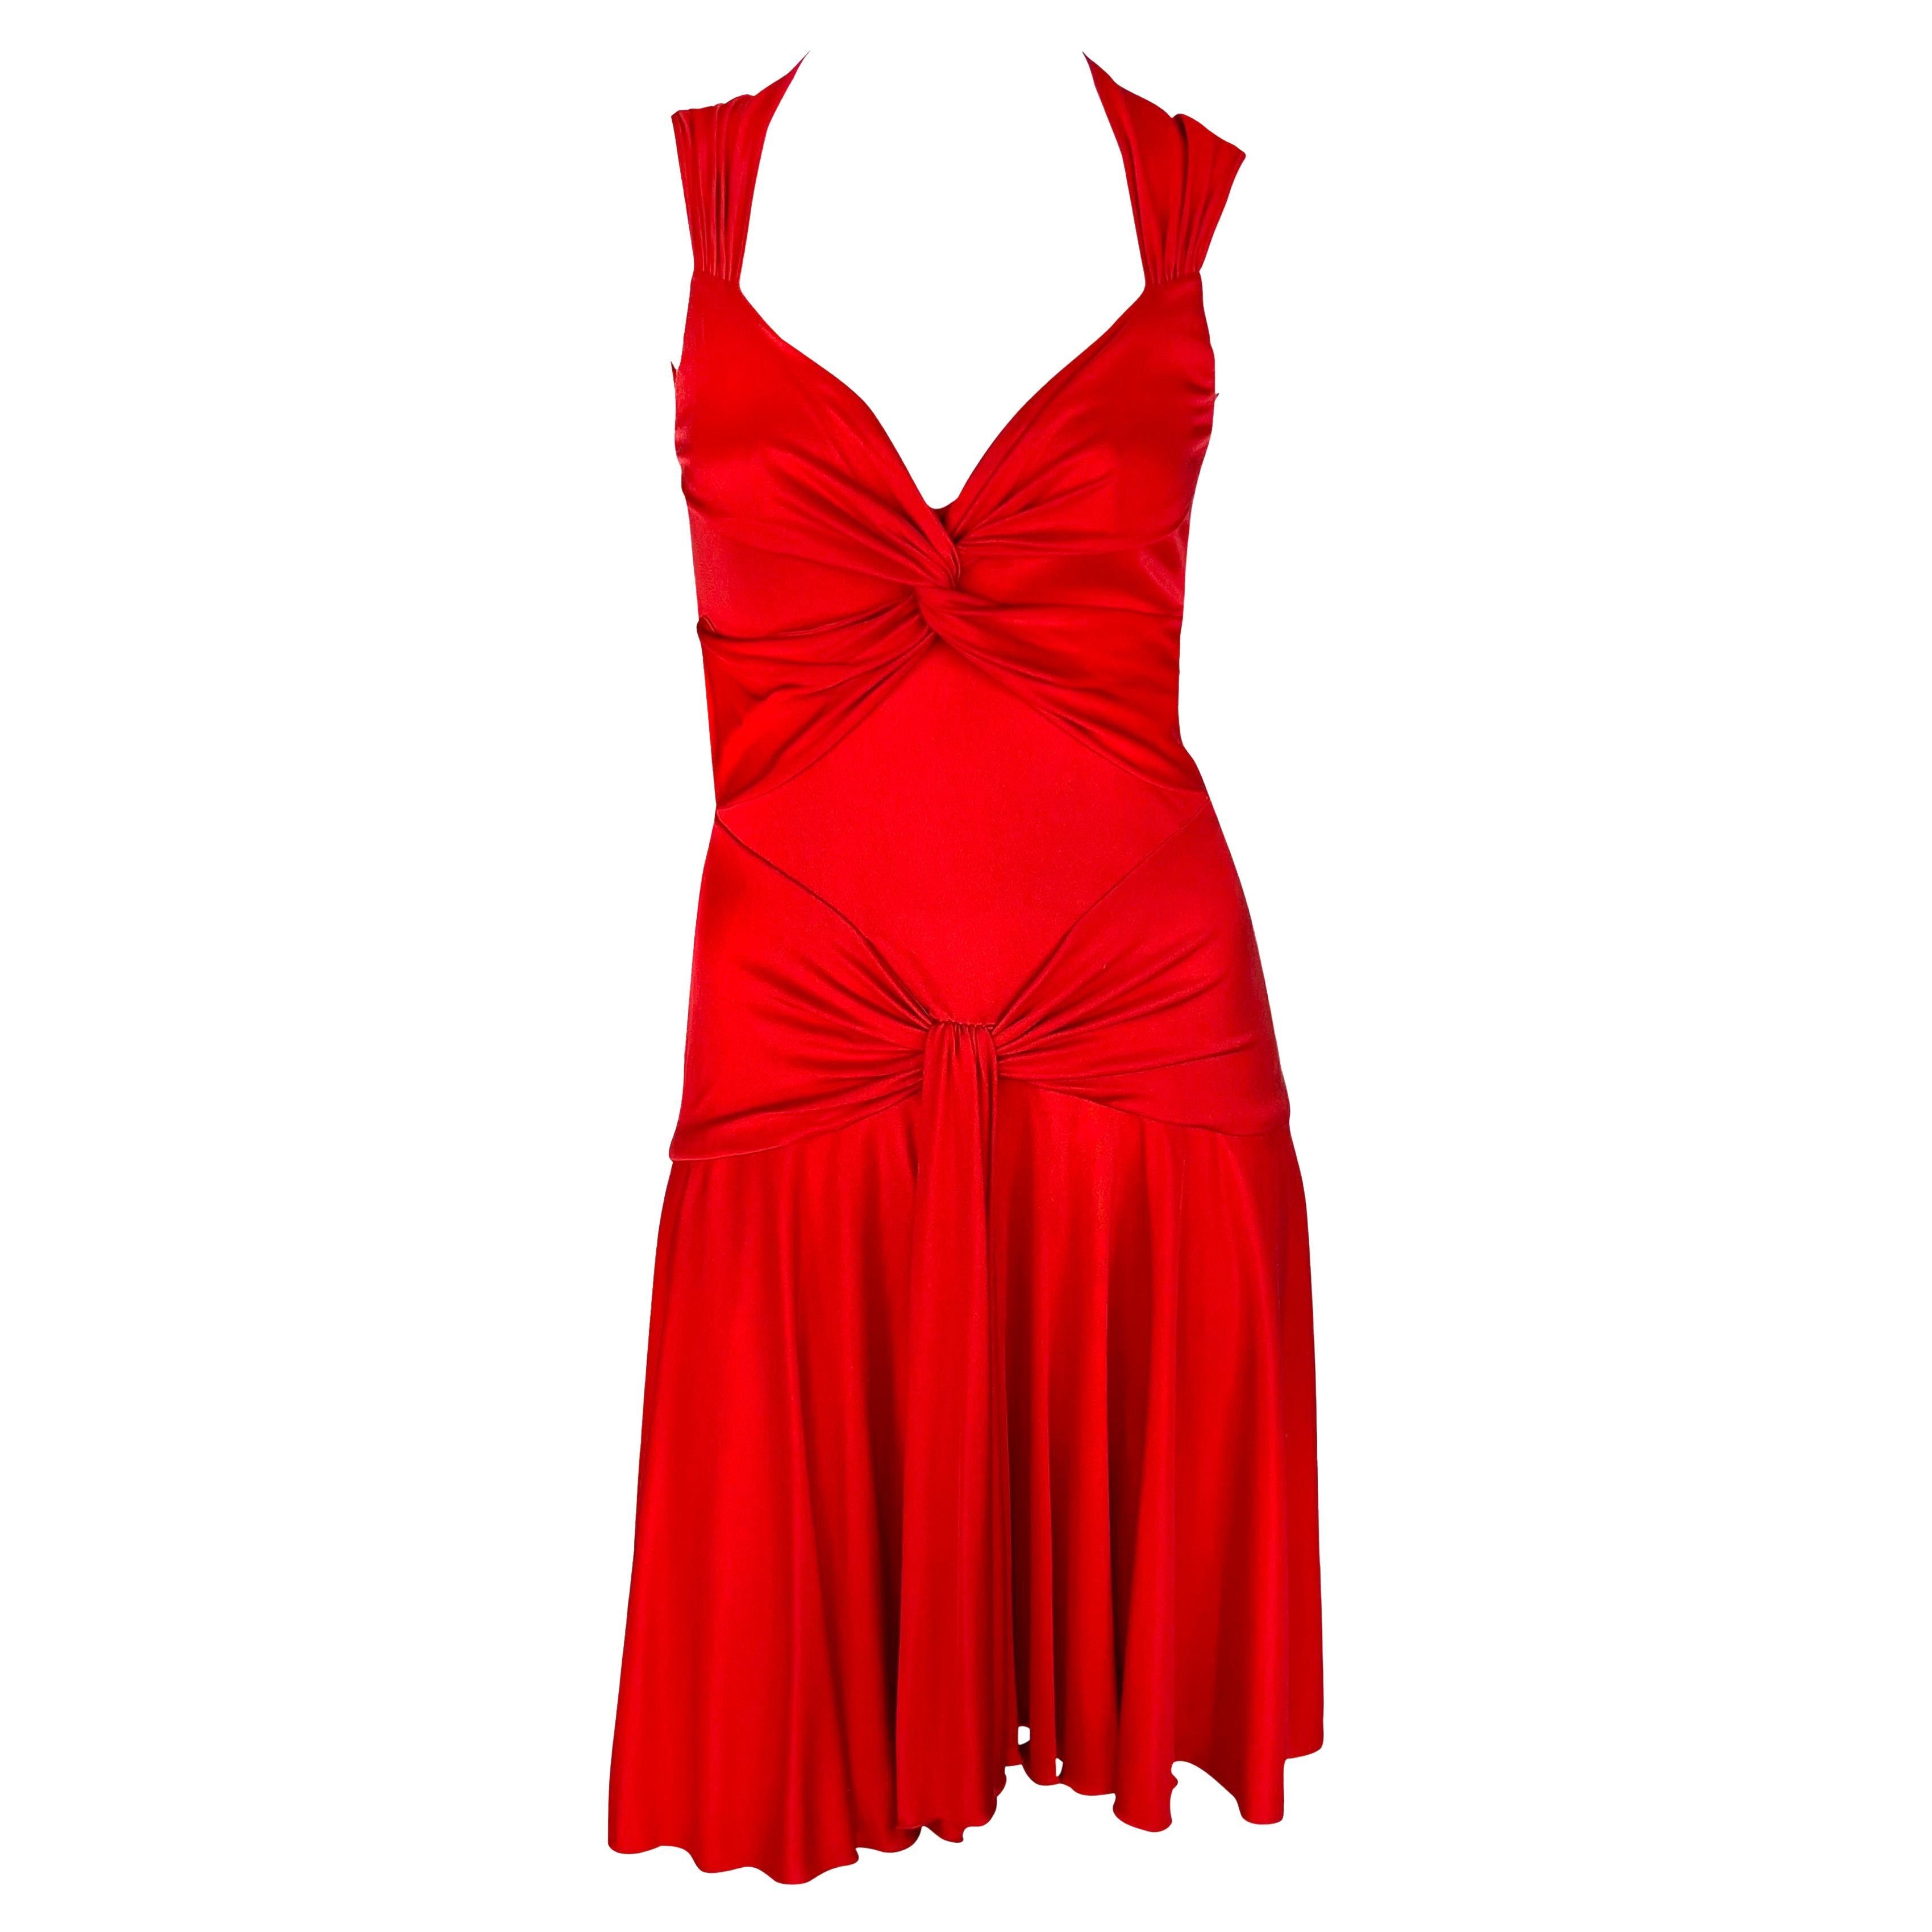 S/S 2004 Valentino Garavani Runway Red Silk Bodycon Flare Mini Dress For Sale